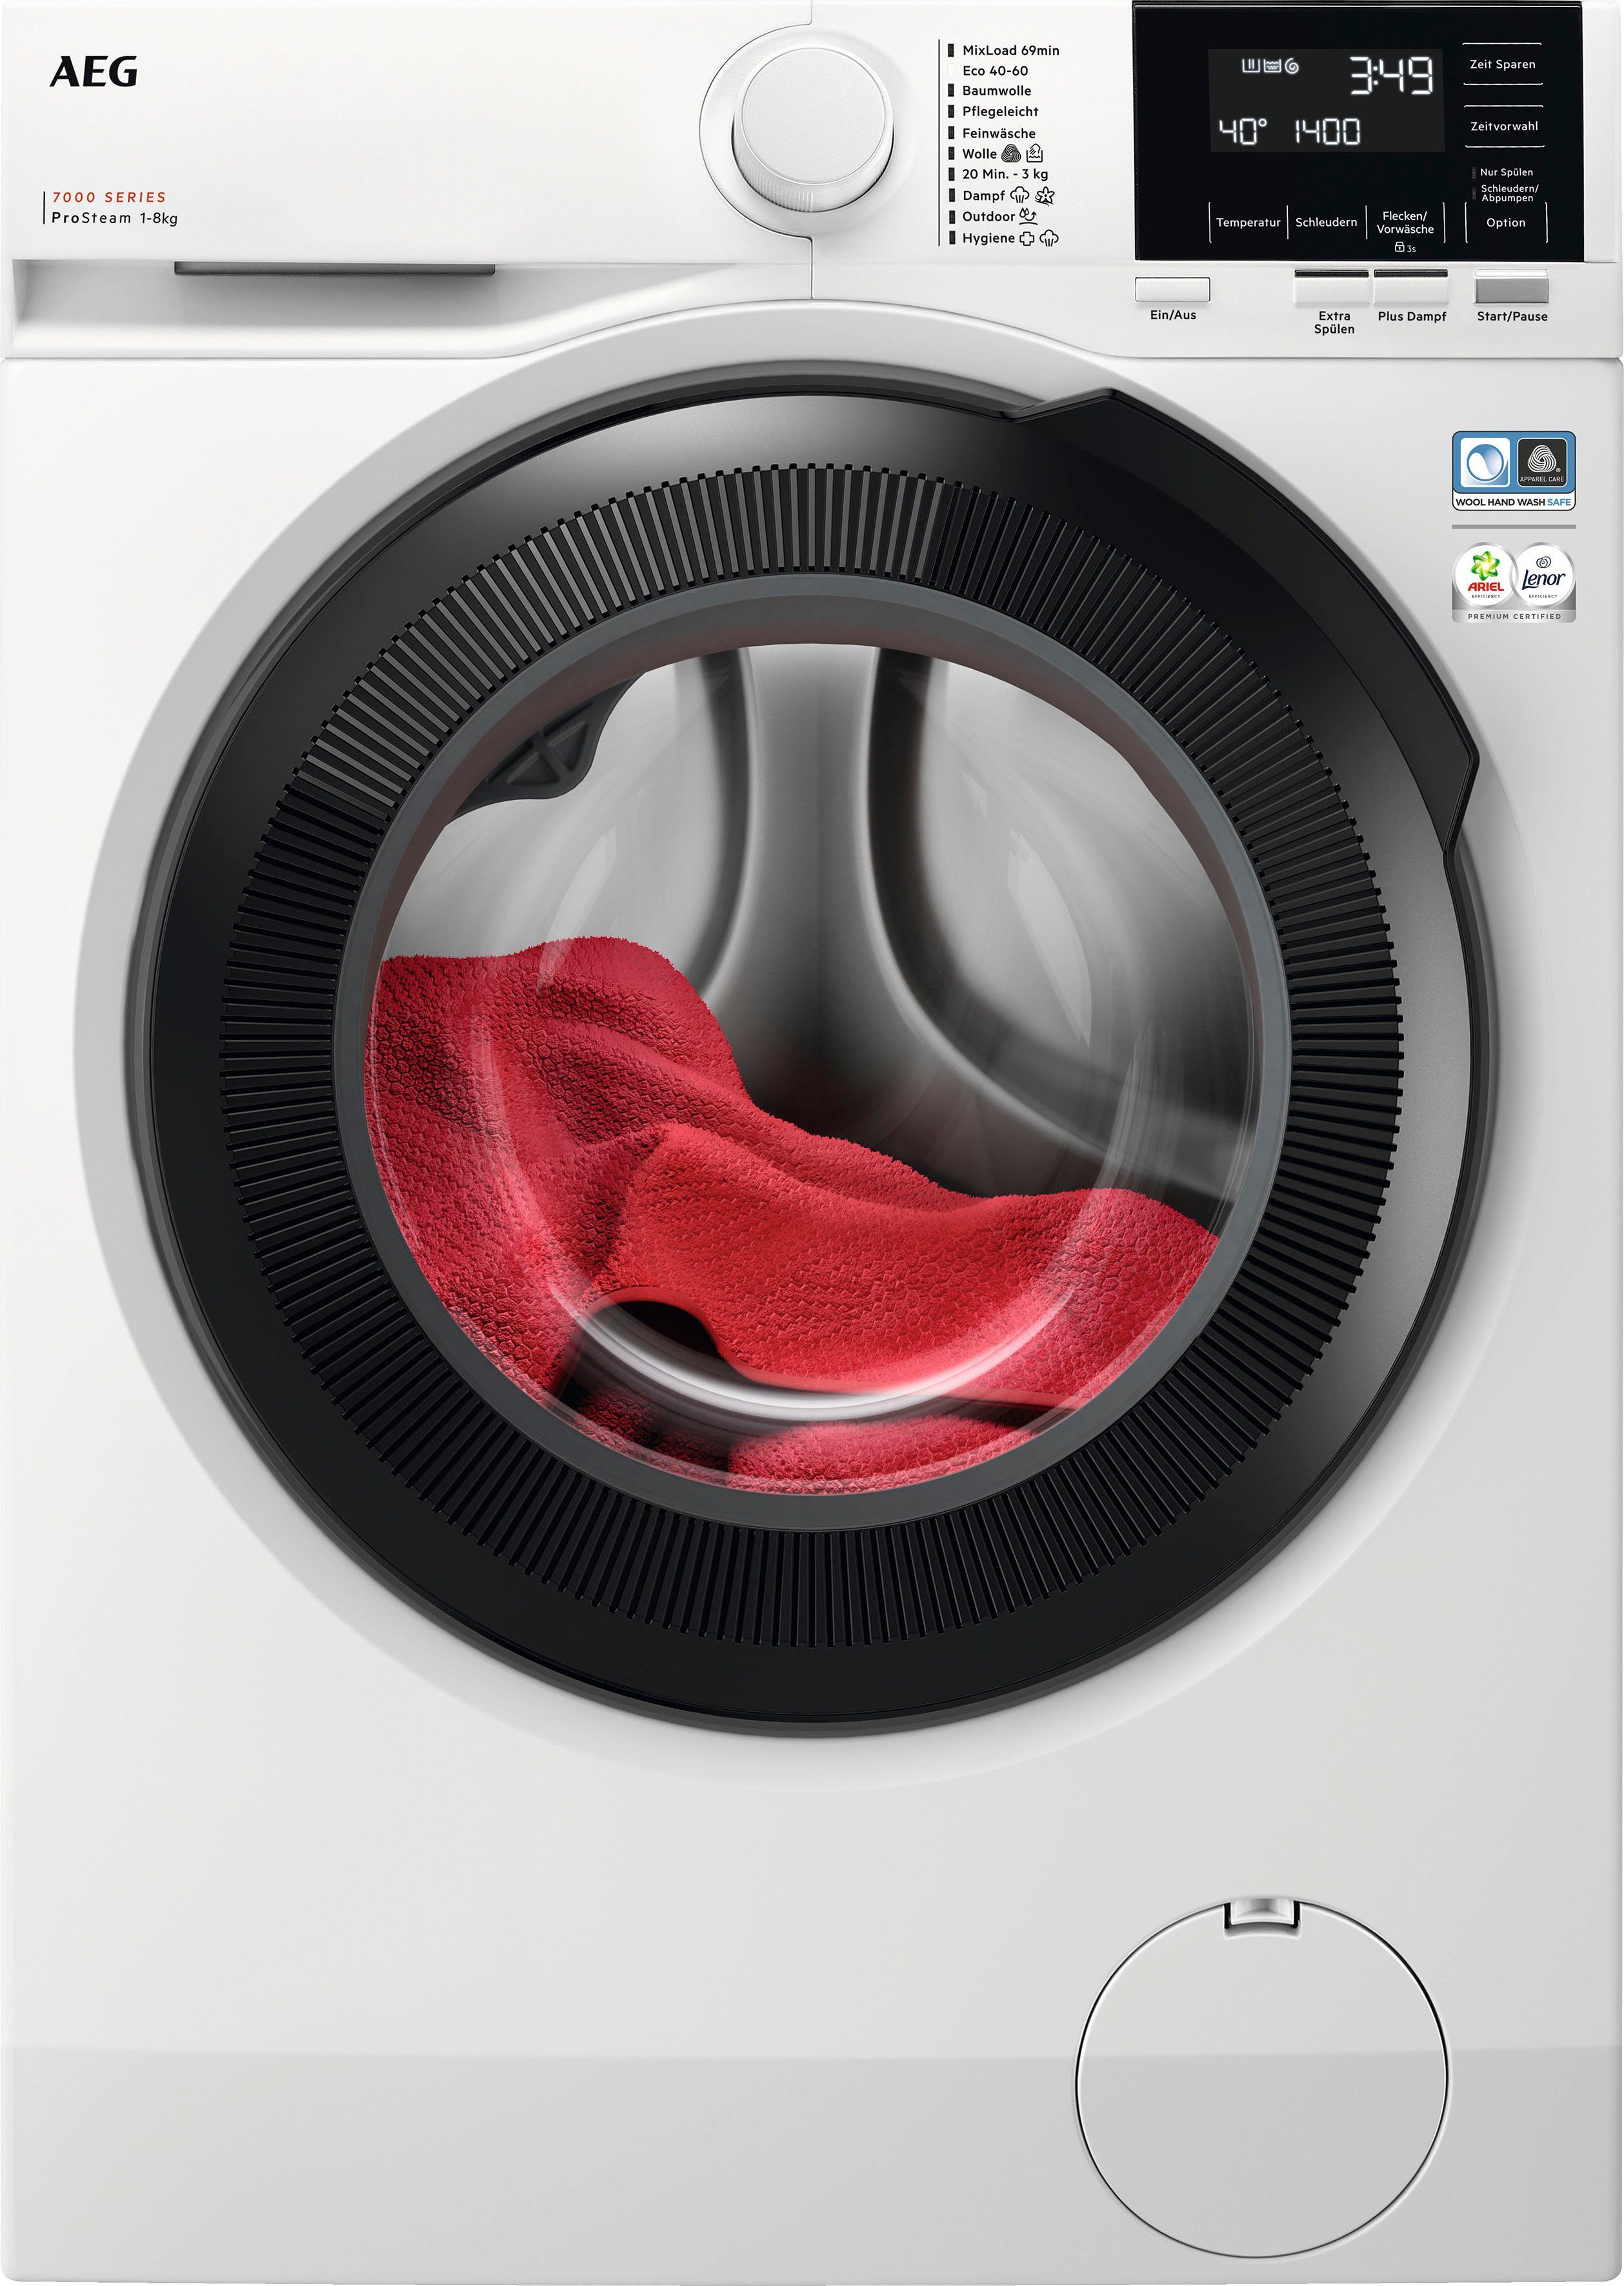 AEG Waschmaschine kg, Dampf-Programm weniger 7000 - 8 für U/min, 96 LR7G60480, ProSteam 1400 Wasserverbrauch 